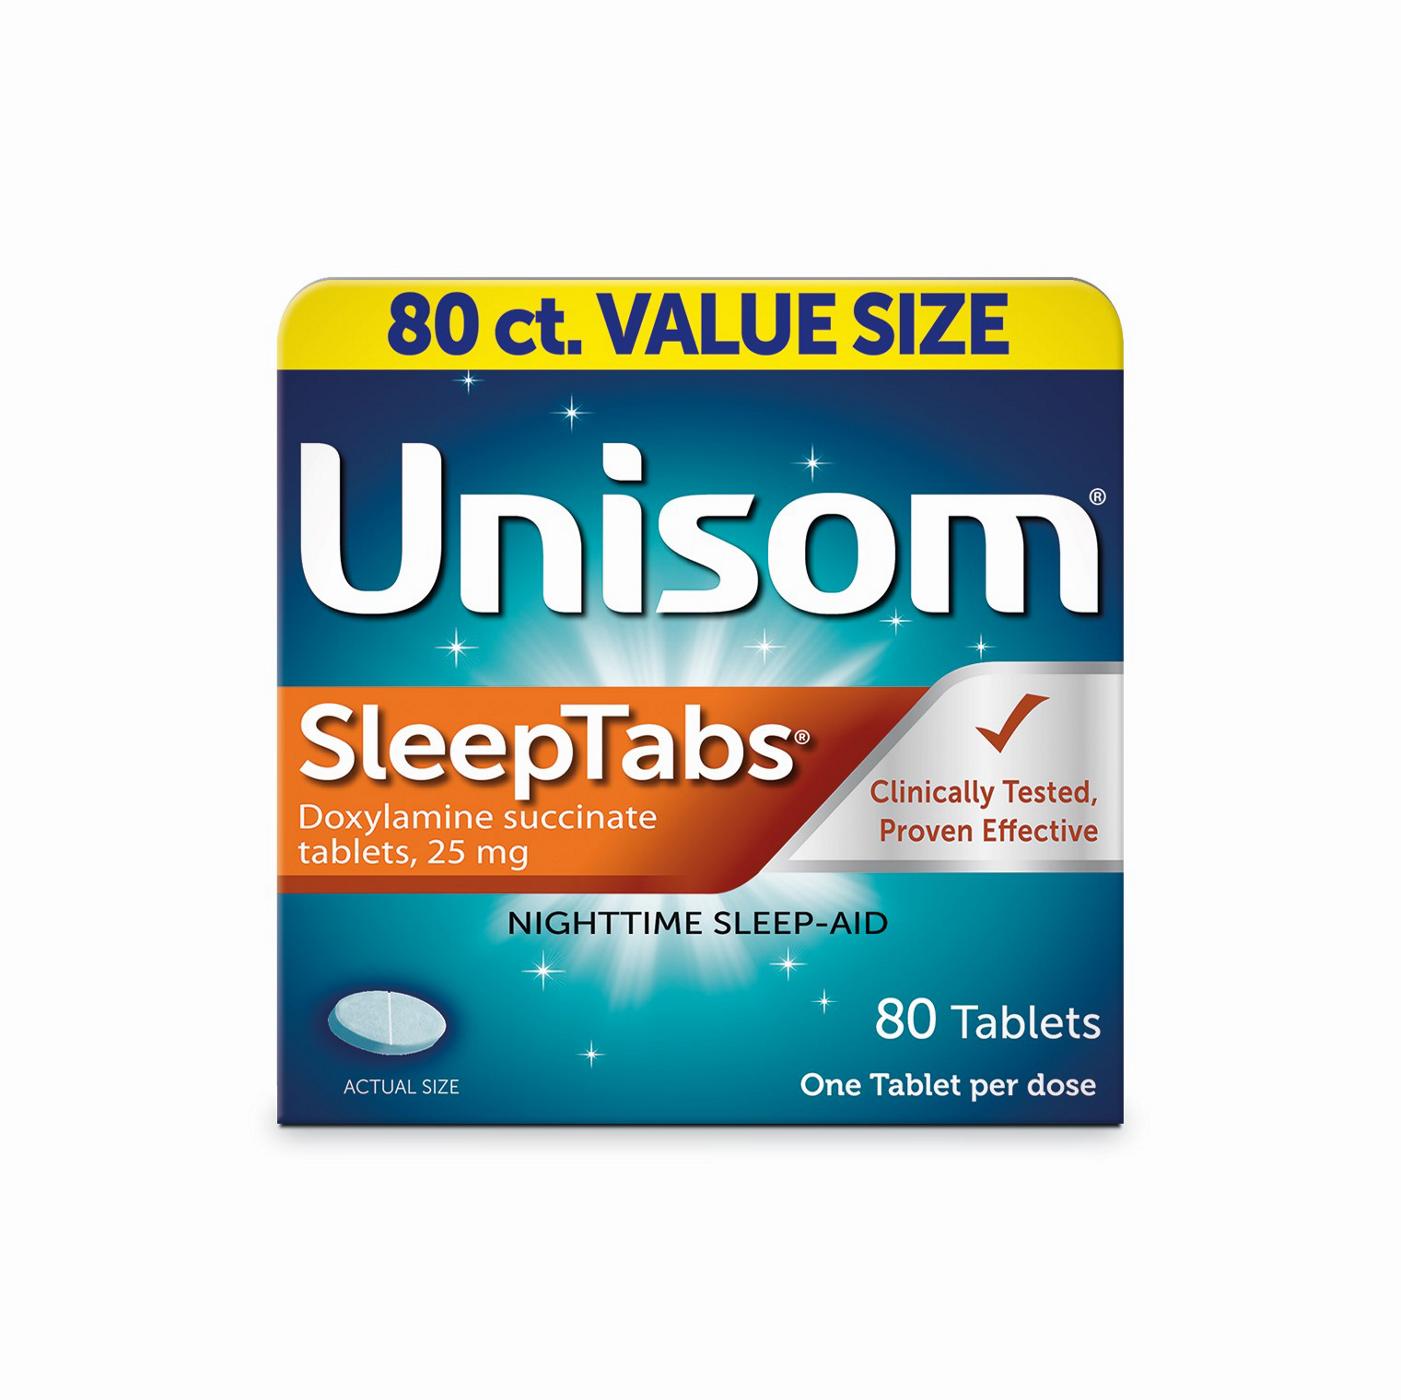 Unisom SleepTabs Nighttime Sleep-Aid Tablets; image 1 of 6